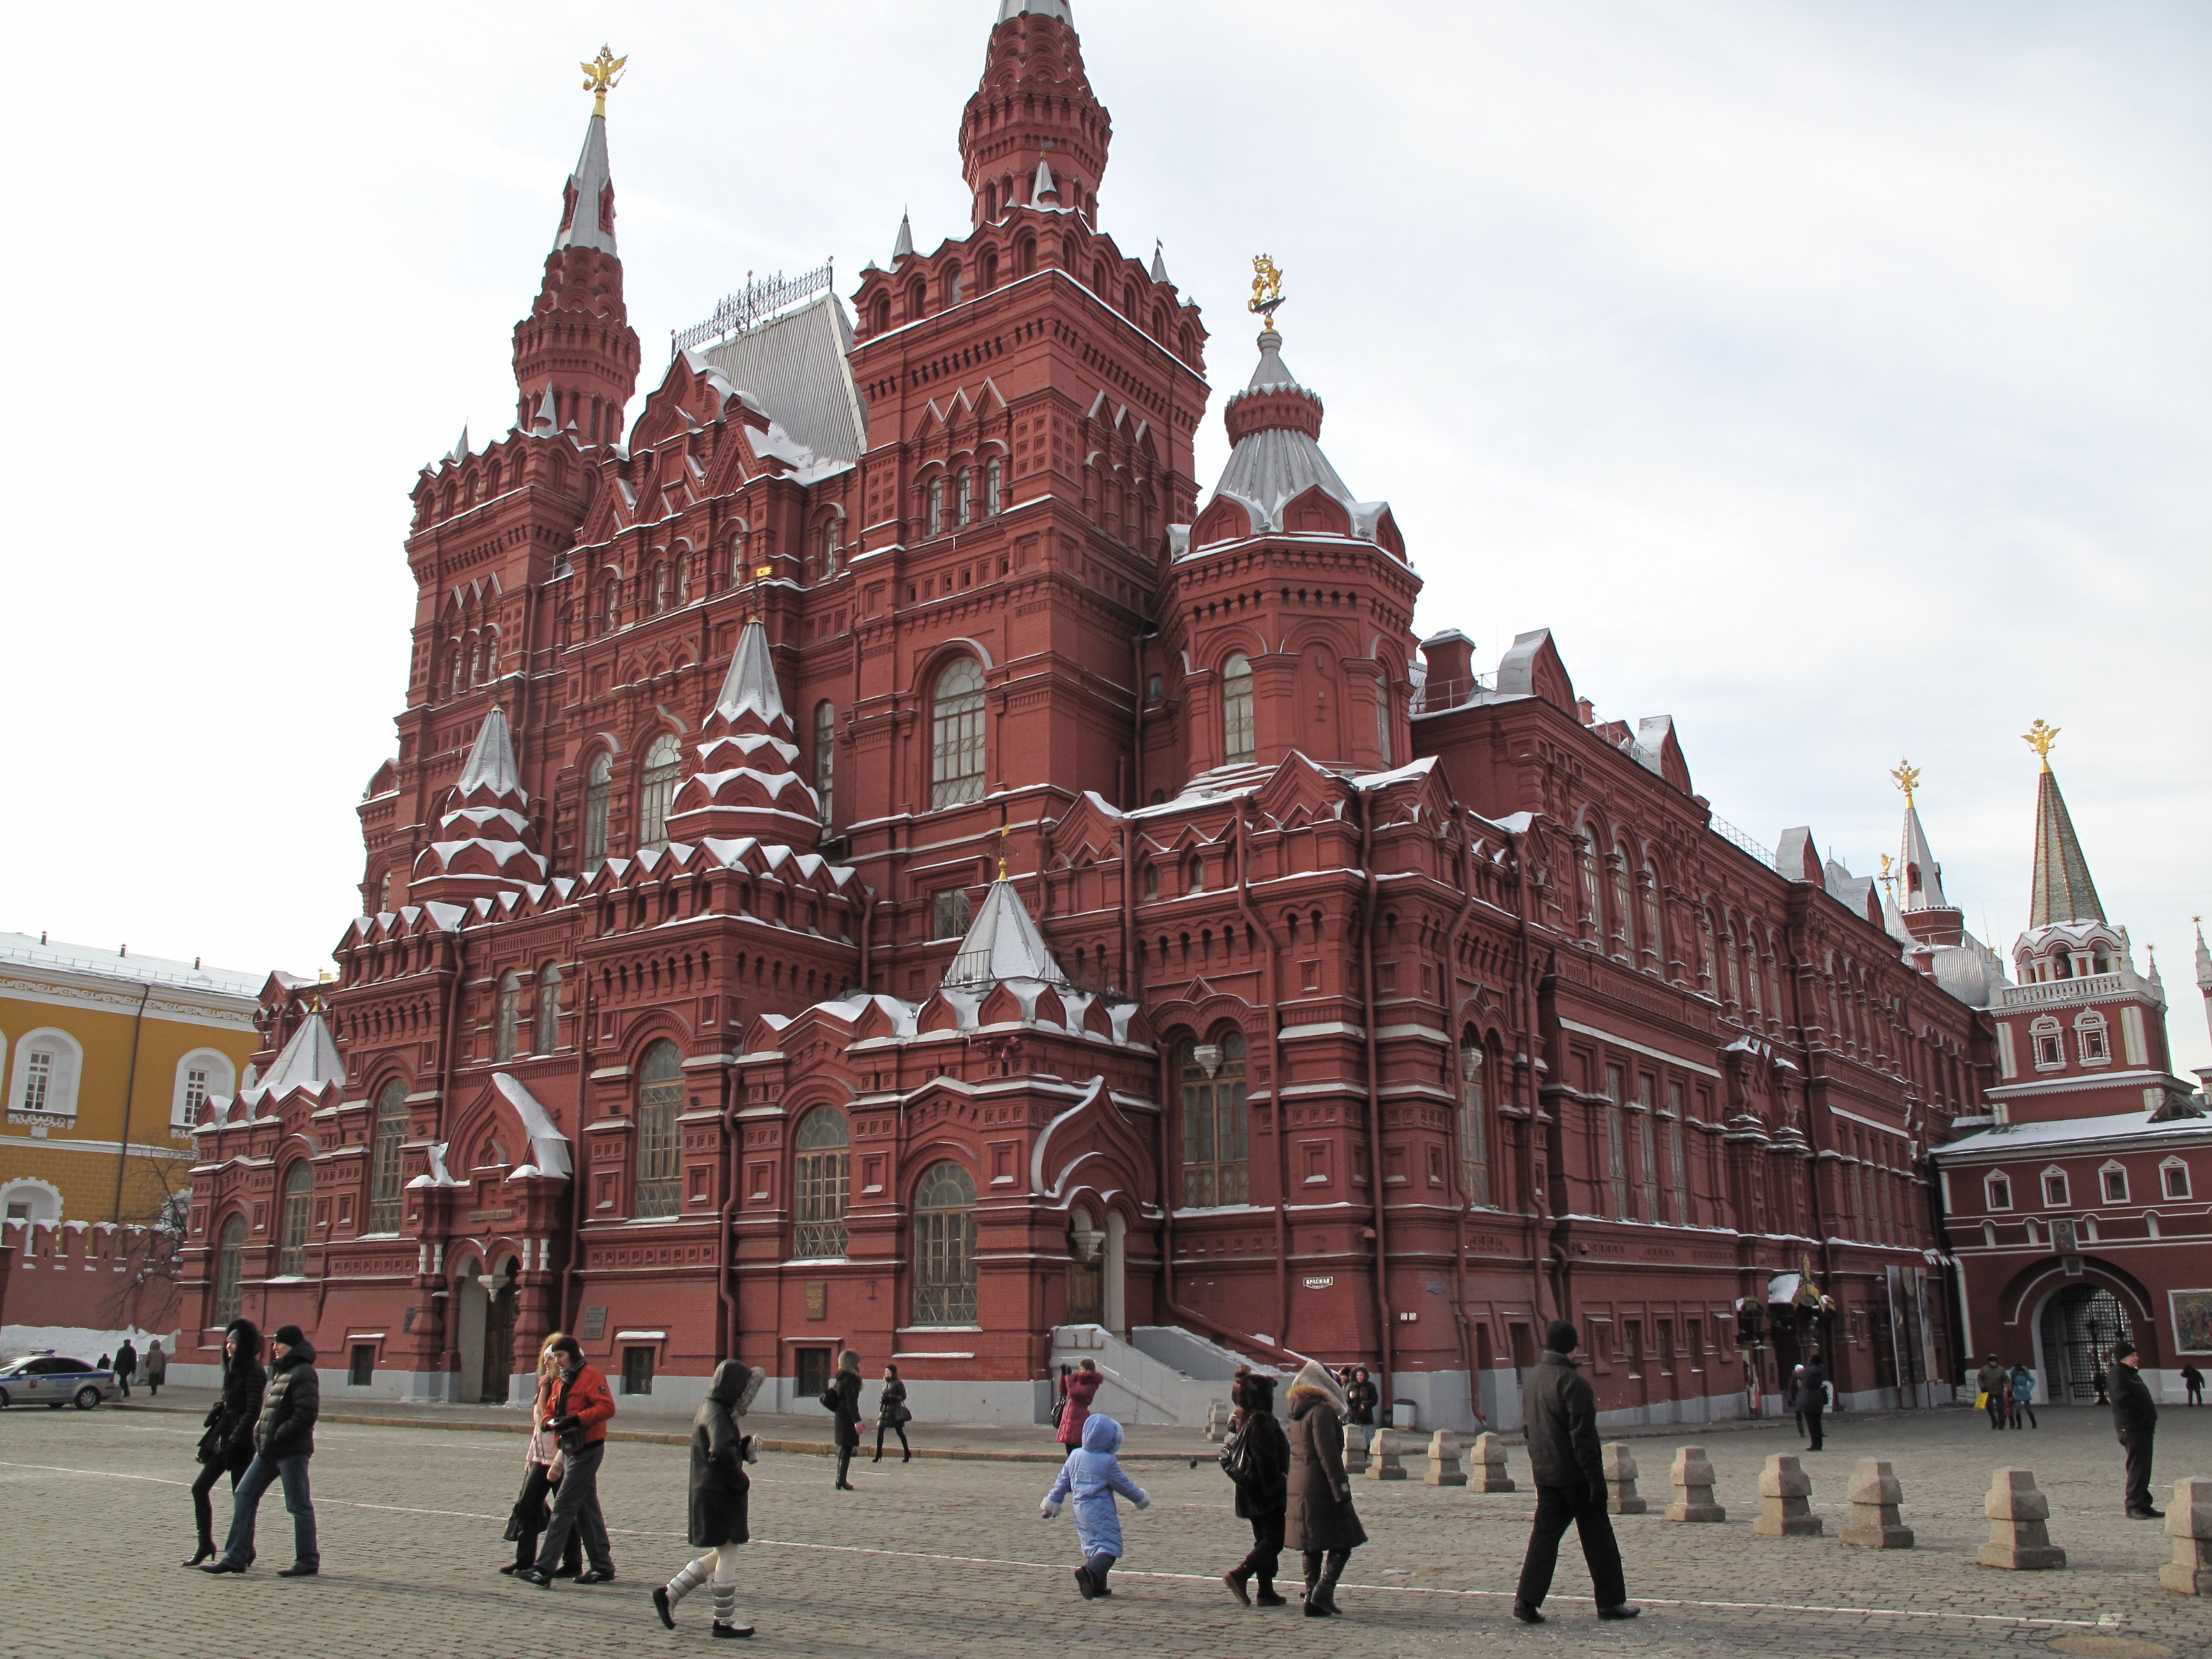 2,红场位于莫斯科的心脏地带,是一组建筑群,已被评为世界文化遗产